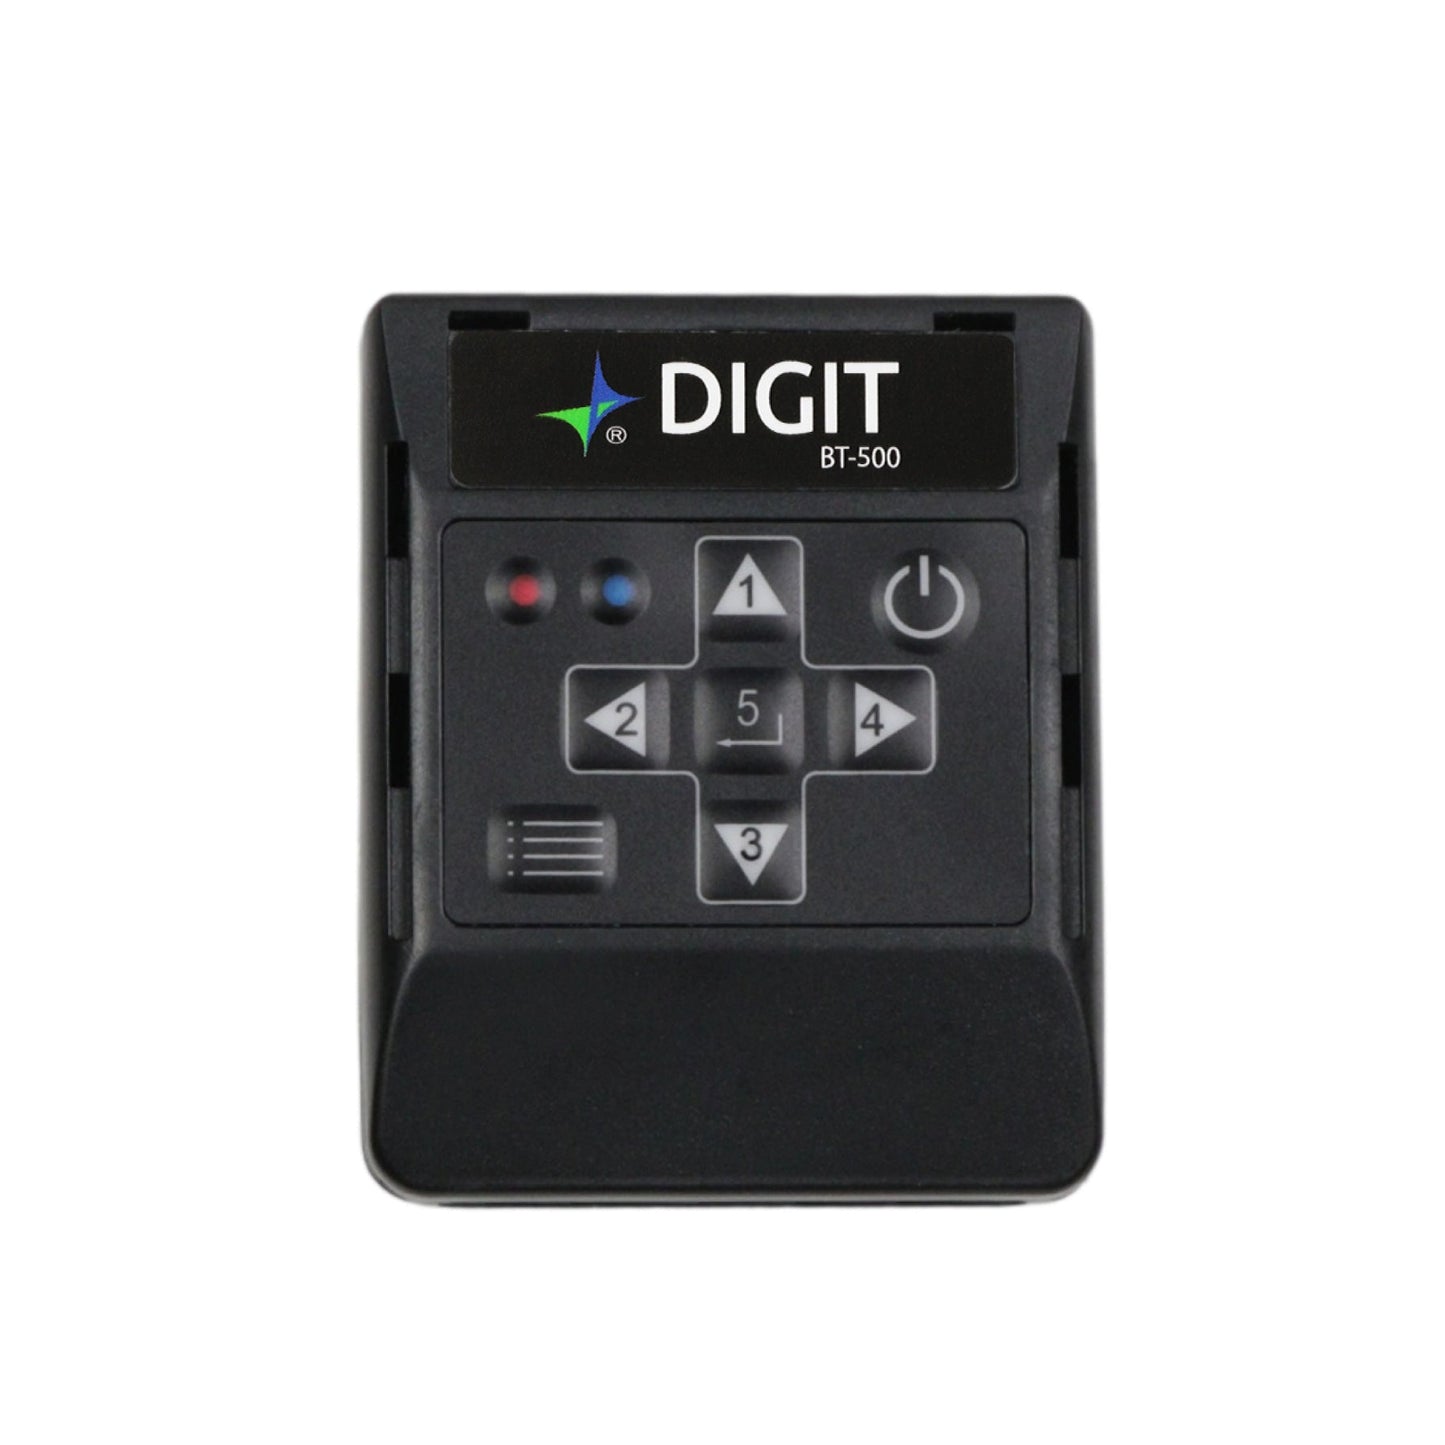 Airturn BT-500 Digit Bluetooth Handheld Remote Control